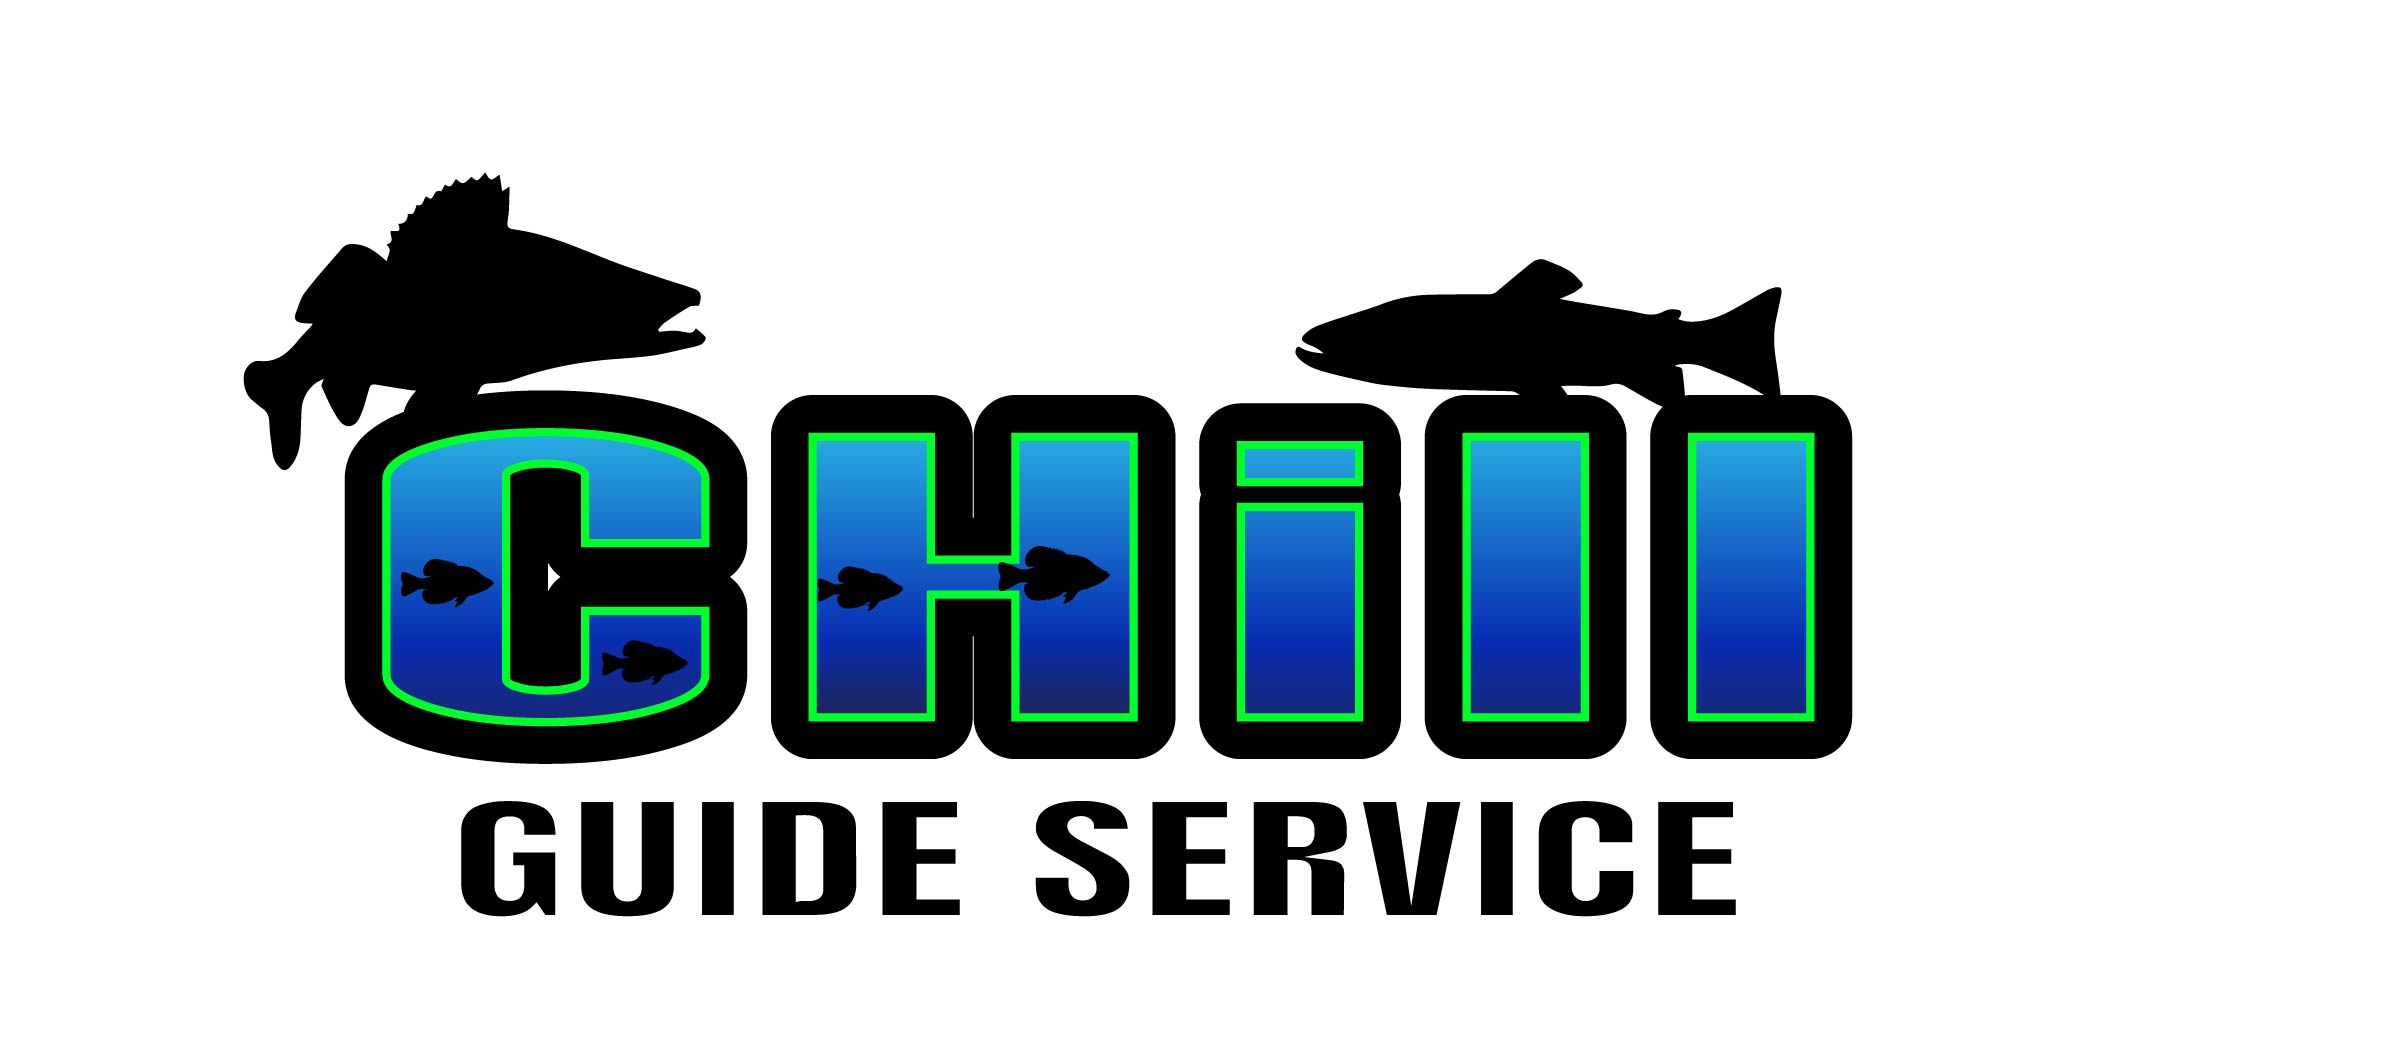 CHill Guide Service Logo